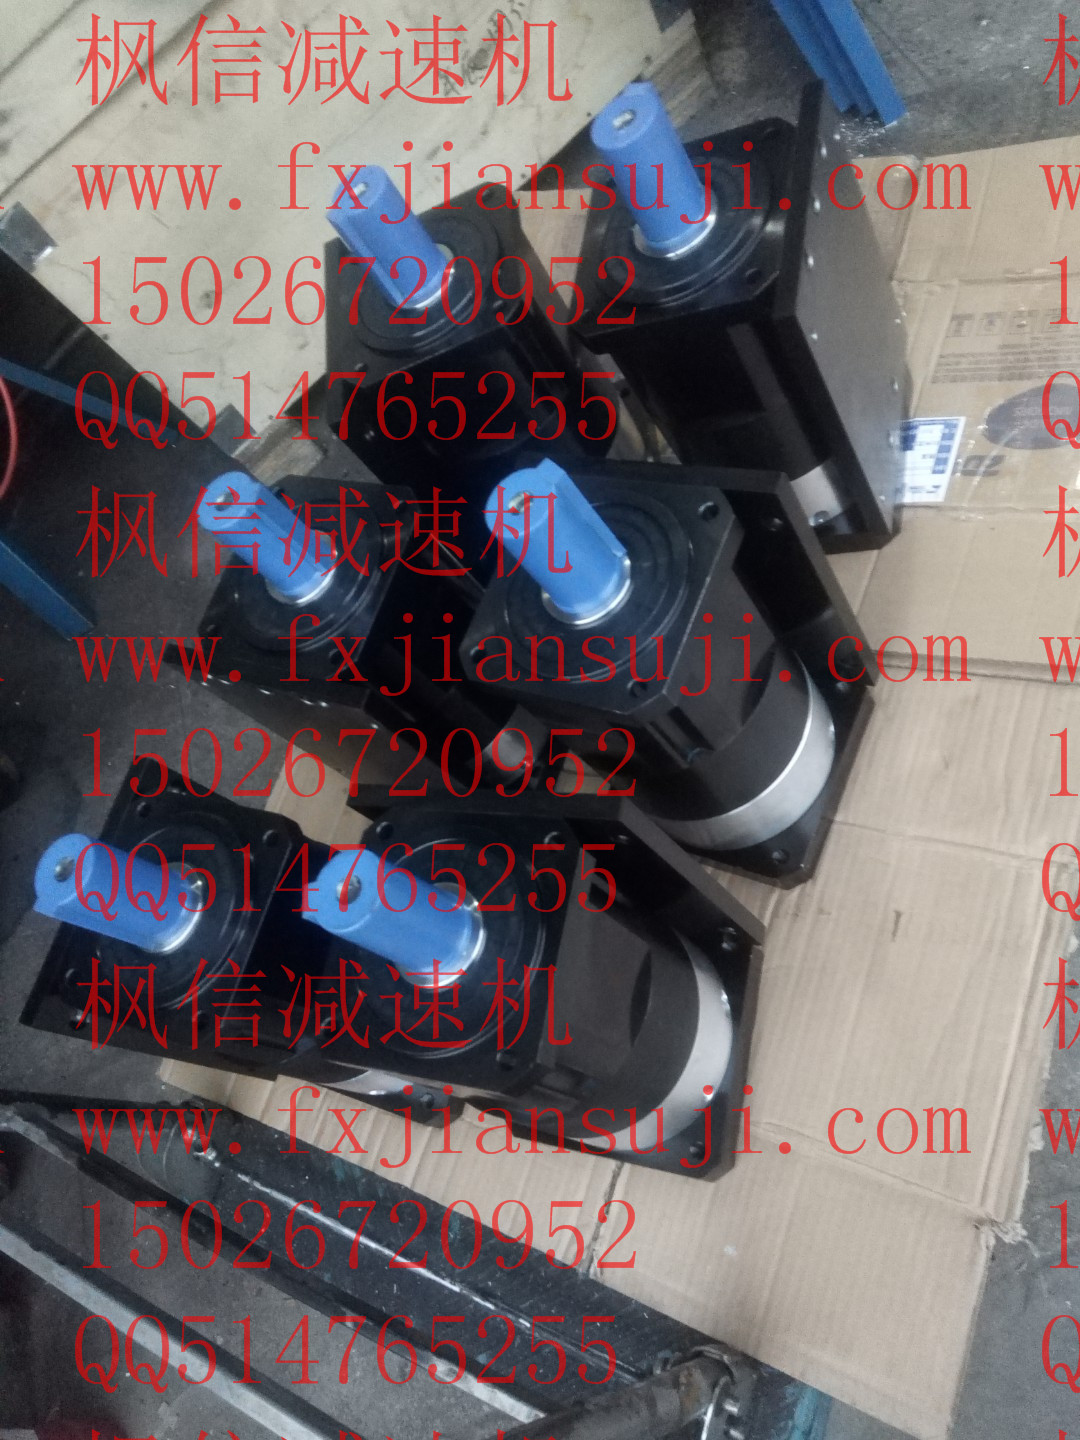 陕西榆林市子洲县郑州蜗轮蜗杆减速机价格新机伺服电机控制器